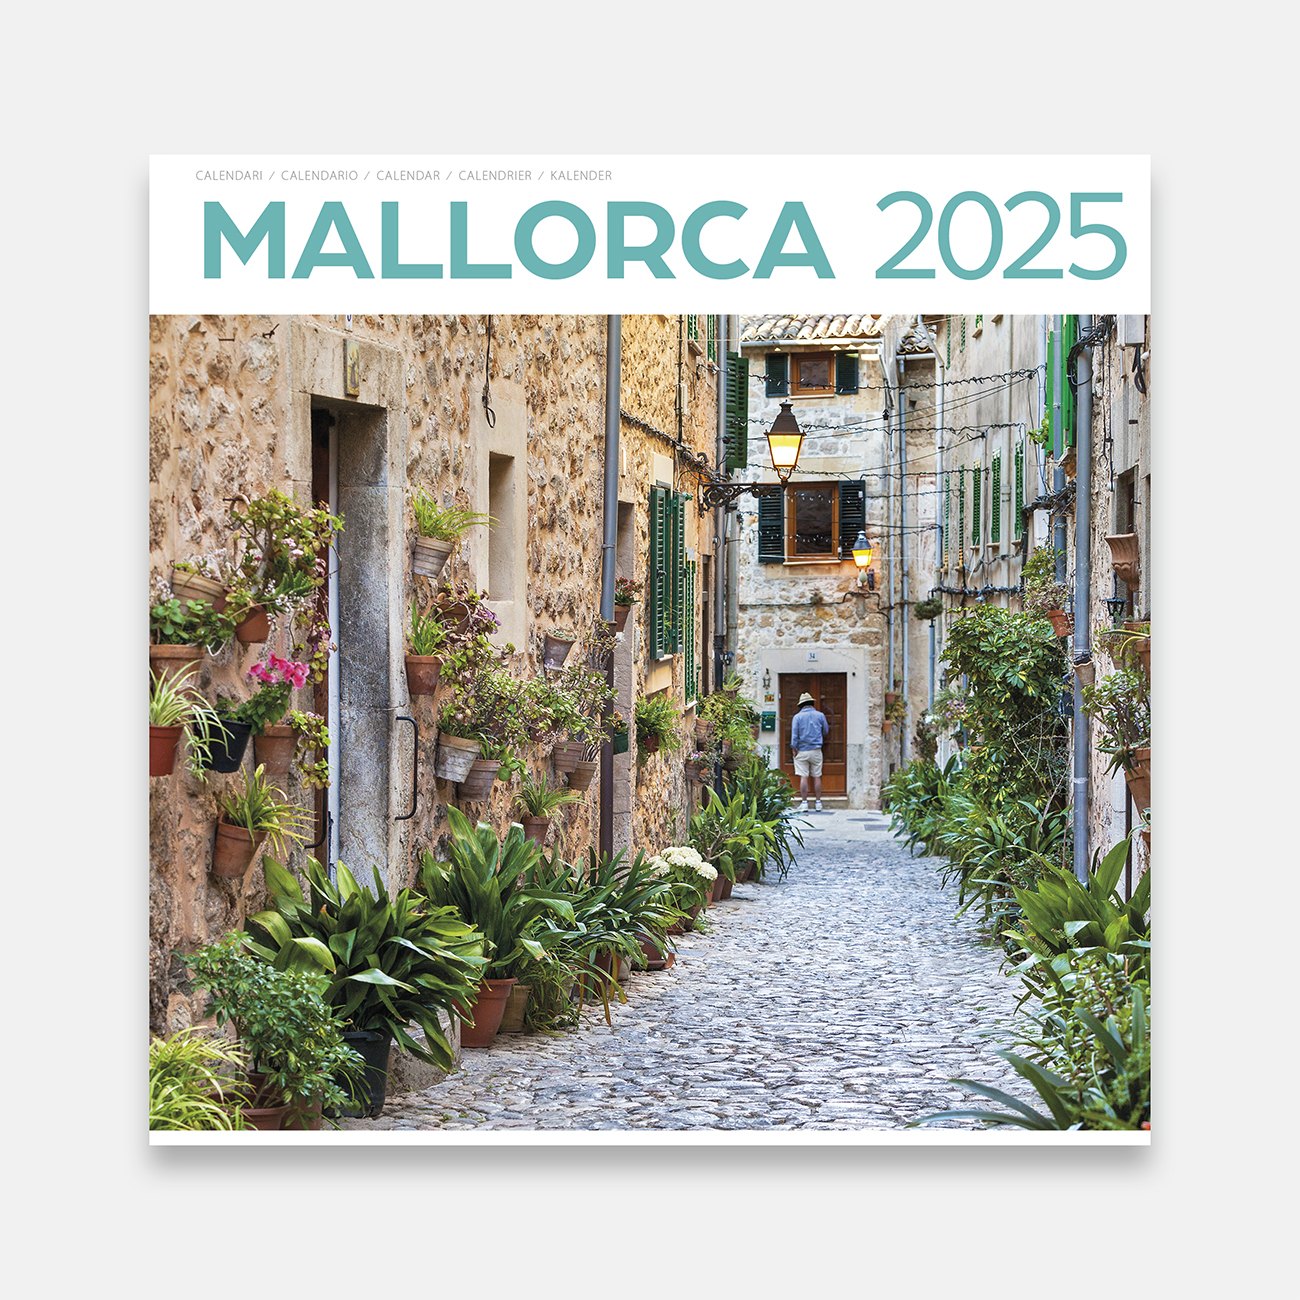 Calendari 2025 Mallorca 25ma2 calendario pared 2025 mallorca